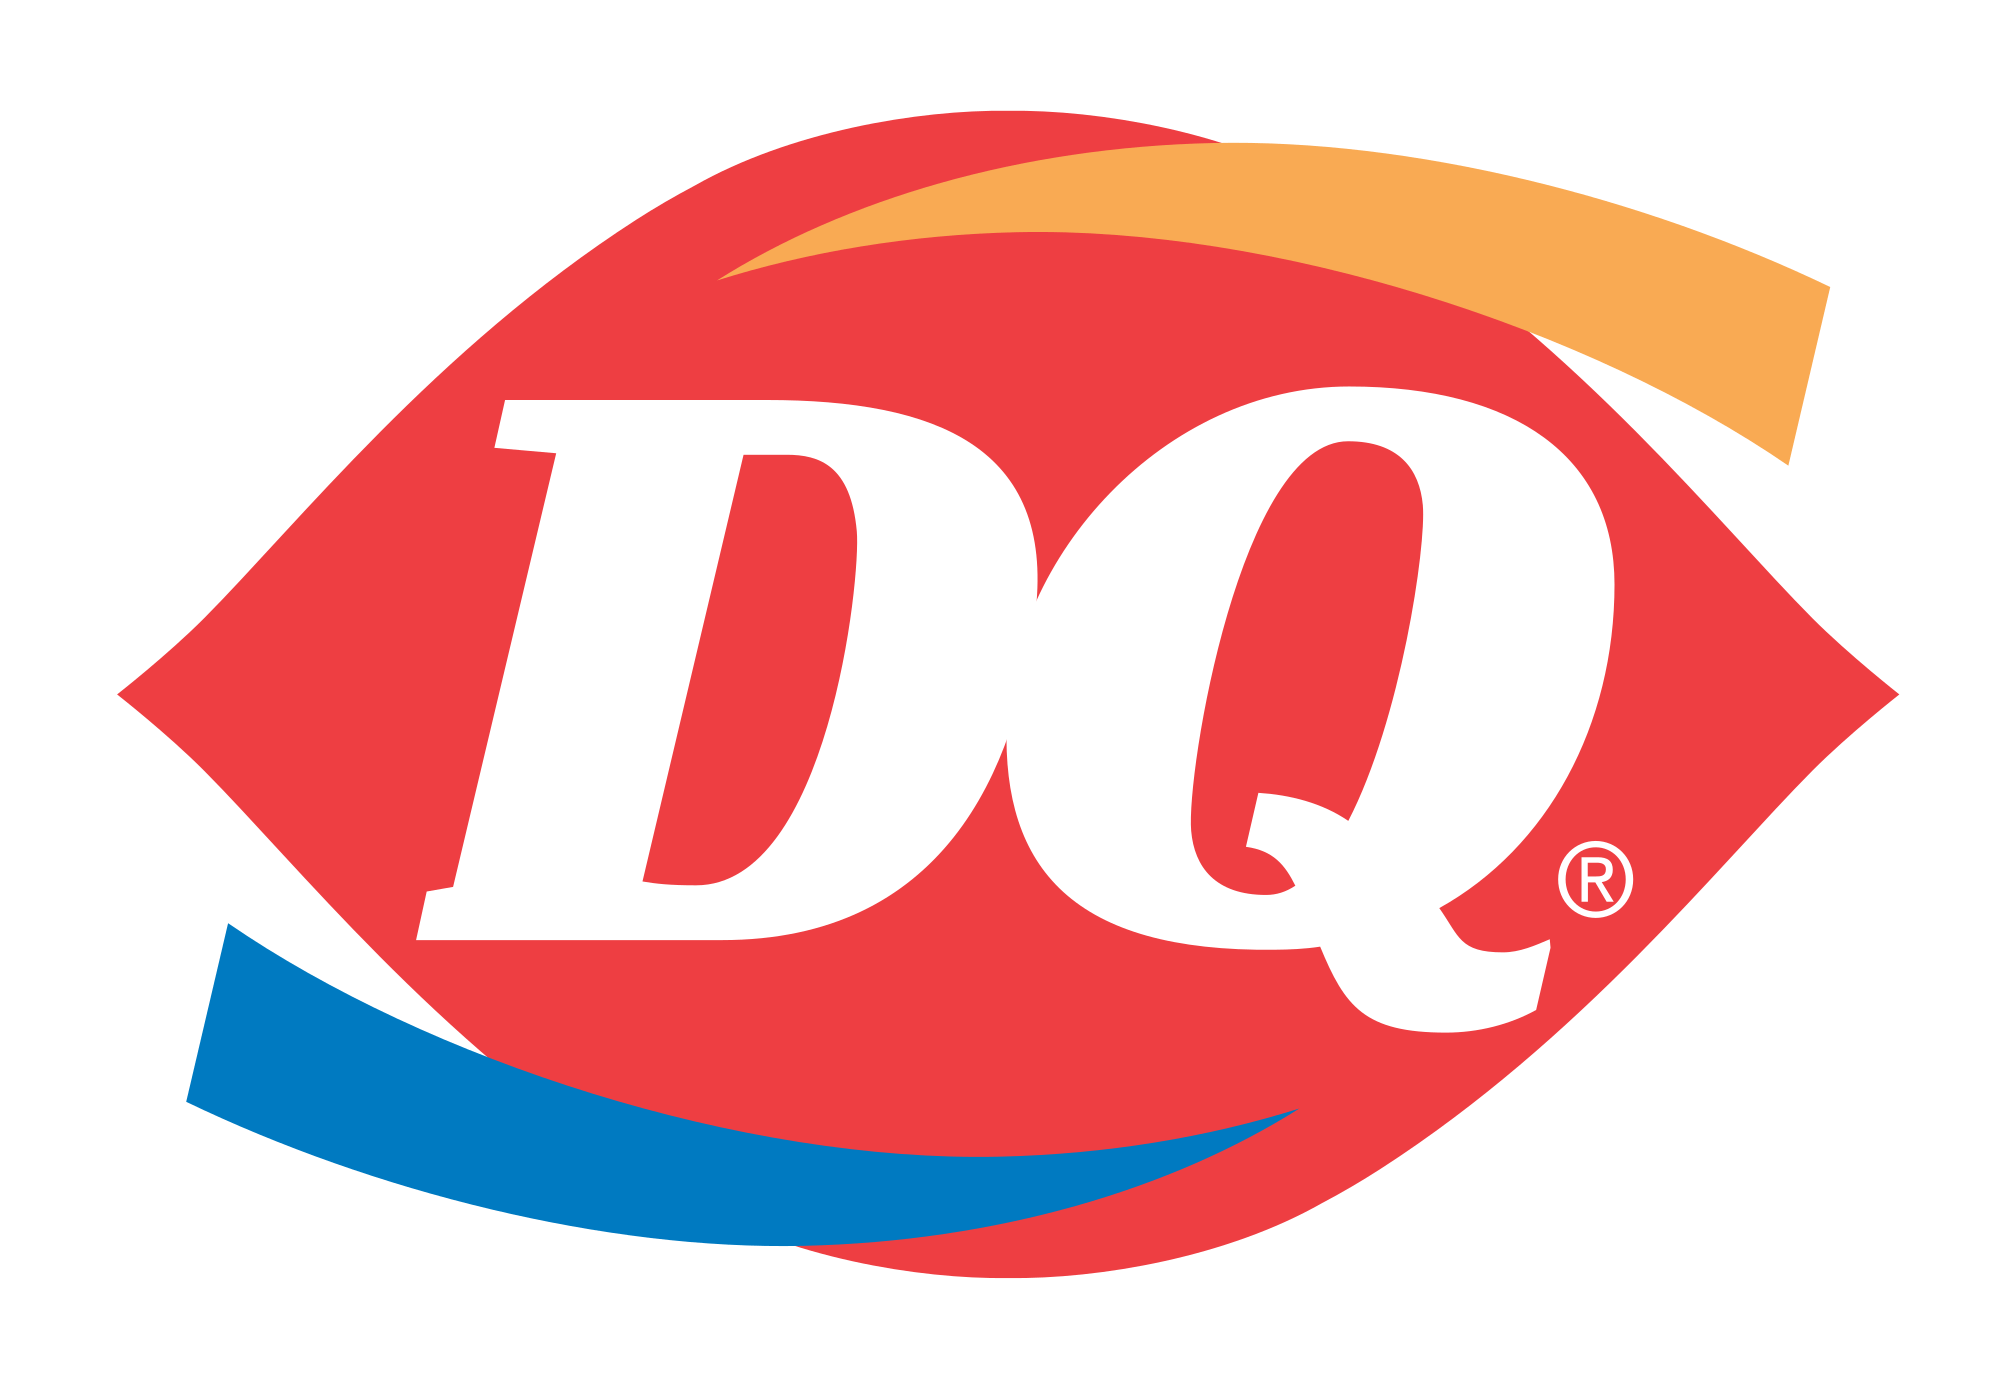 Restrurant Food Store Logo - Dairy Queen